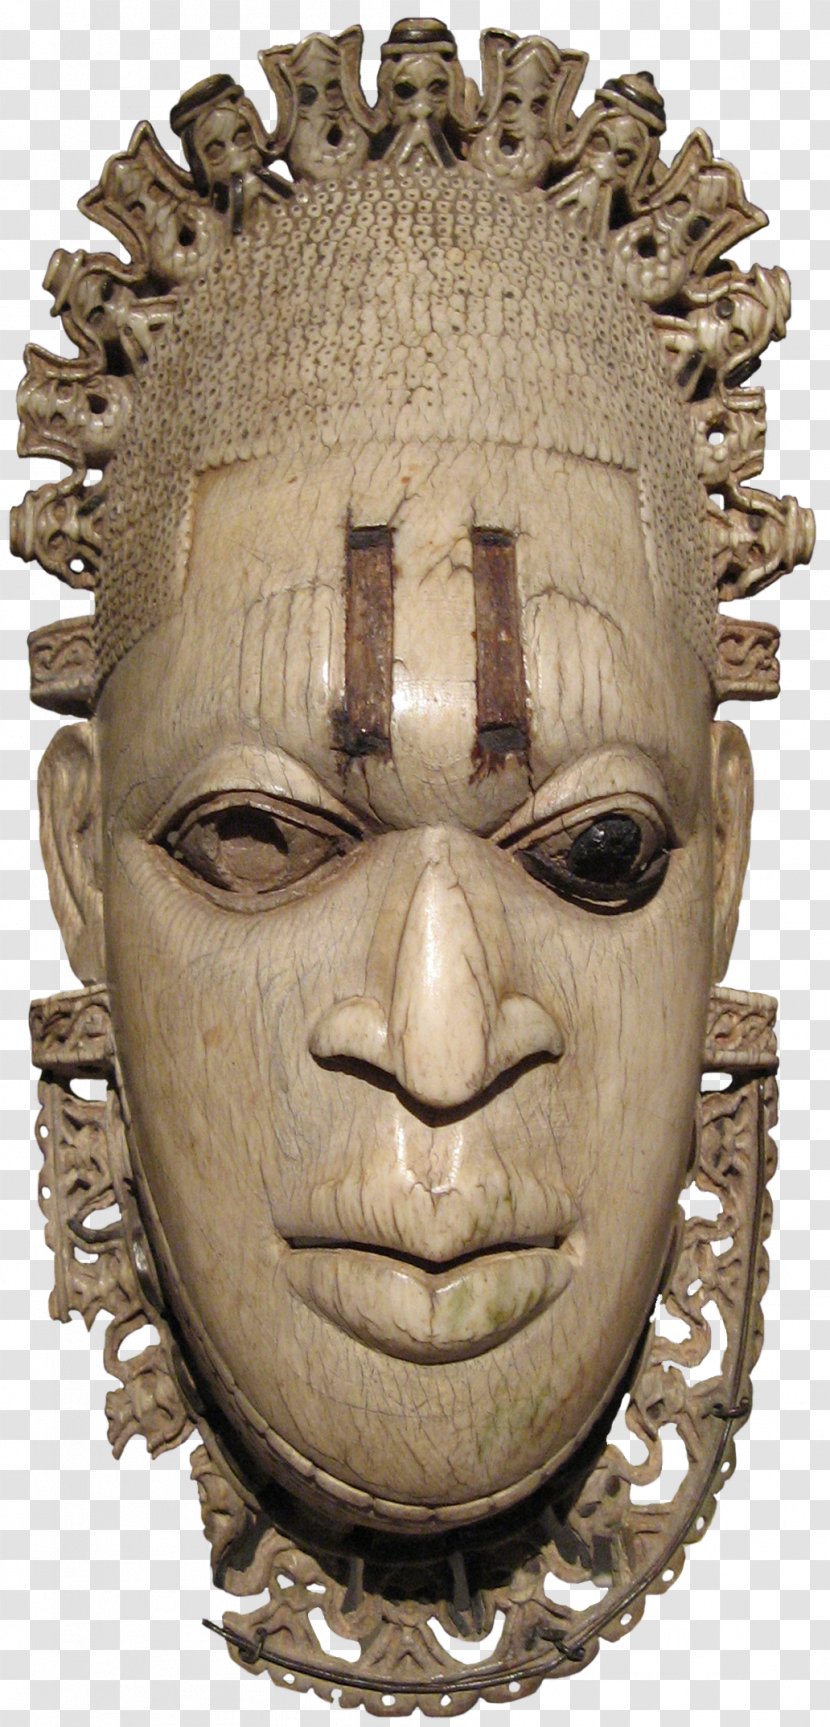 Nigeria Benin Ivory Mask Kingdom Of Traditional African Masks Transparent PNG